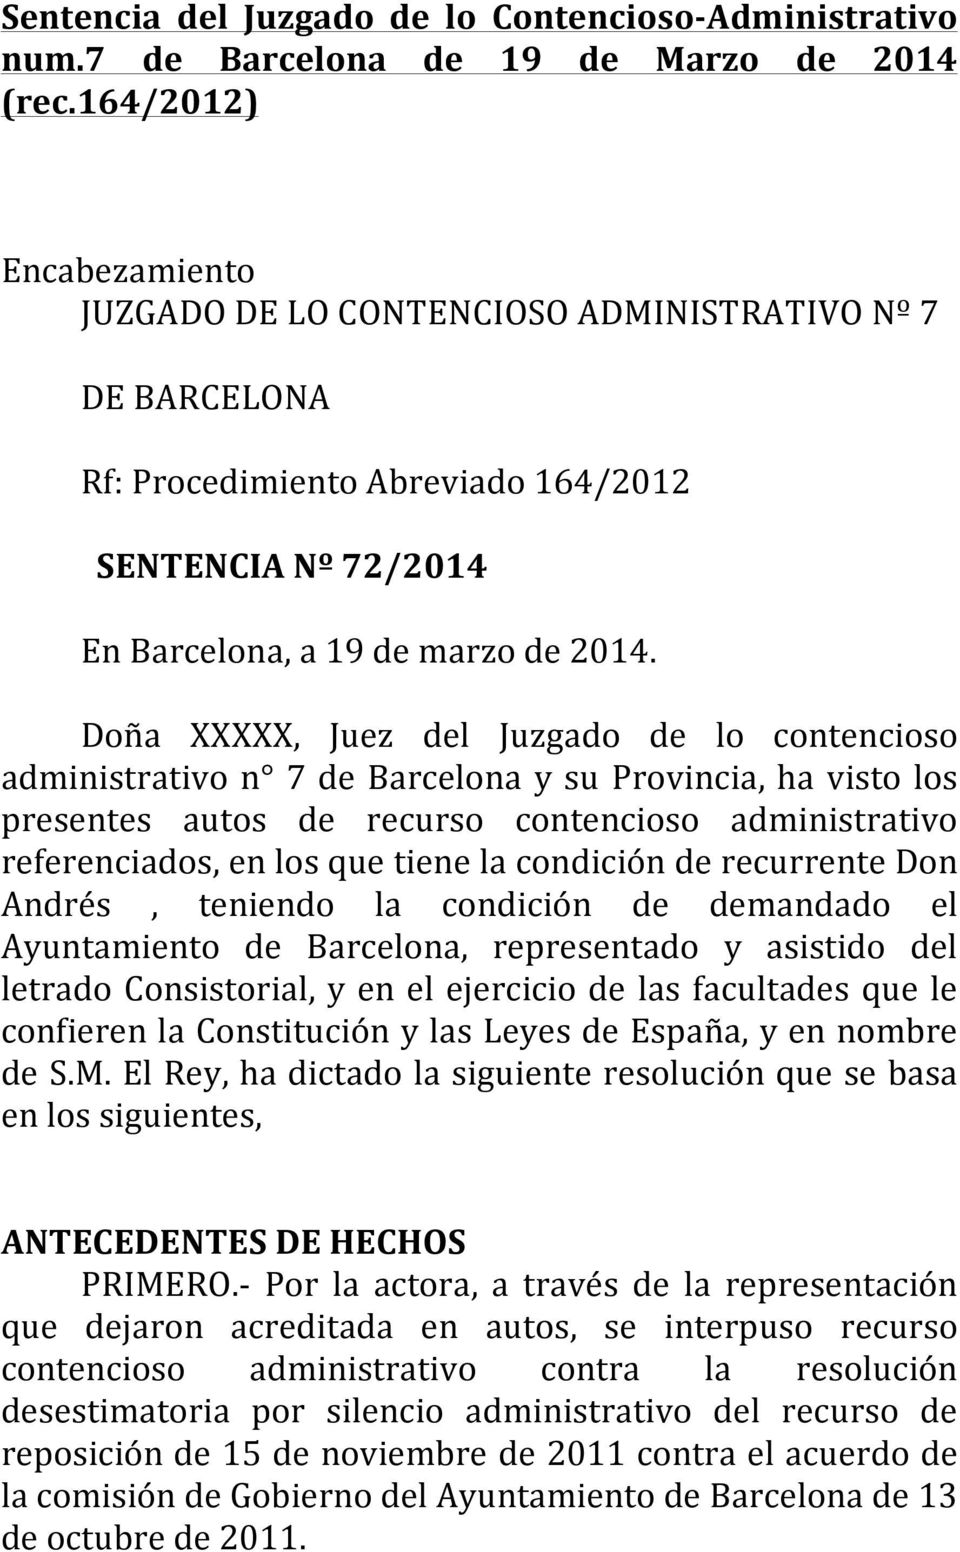 Doña XXXXX, Juez del Juzgado de lo contencioso administrativo n 7 de Barcelona y su Provincia, ha visto los presentes autos de recurso contencioso administrativo referenciados, en los que tiene la